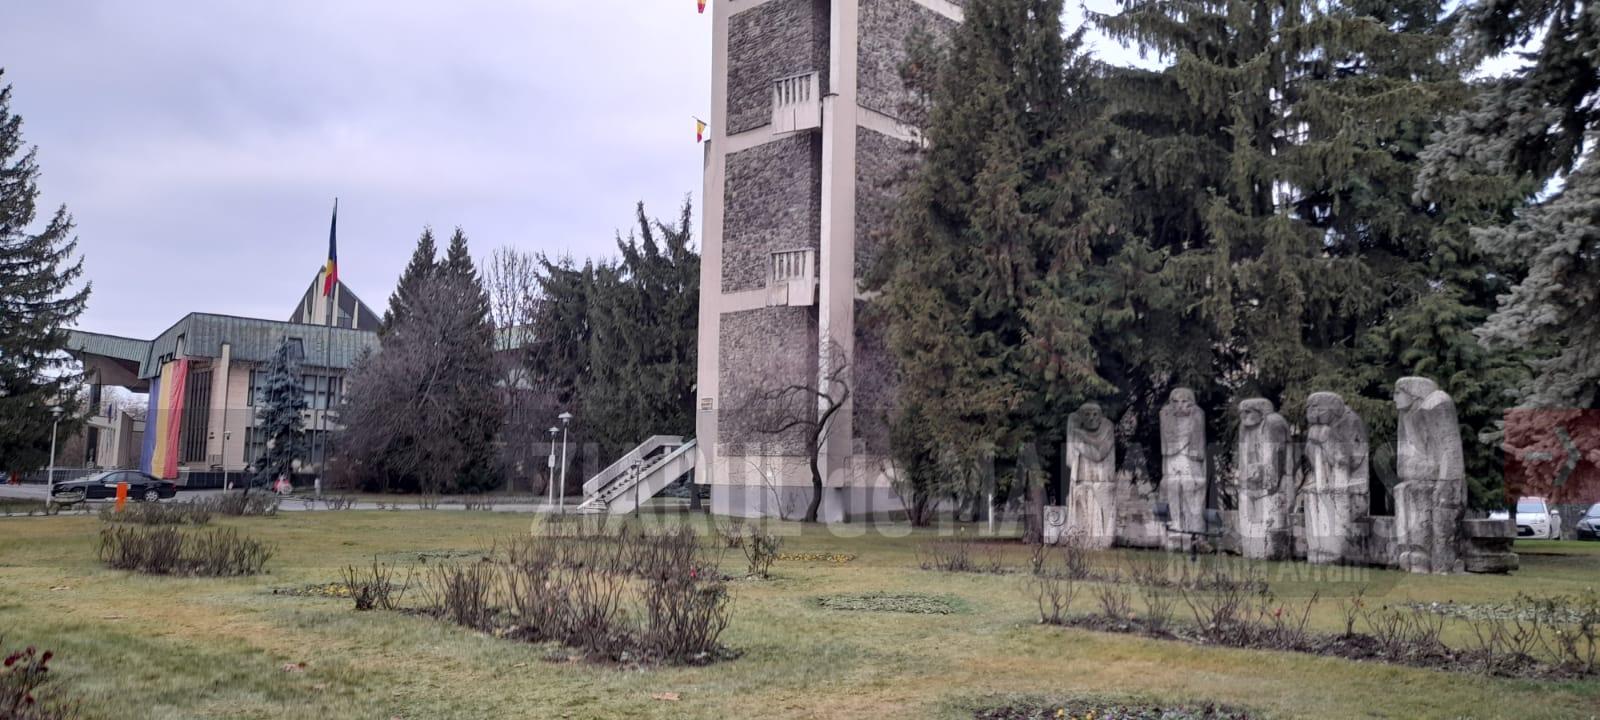 Miting autorizat în fața Prefecturii Maramureș pentru susținerea familiei Petre și Camelia Furdui